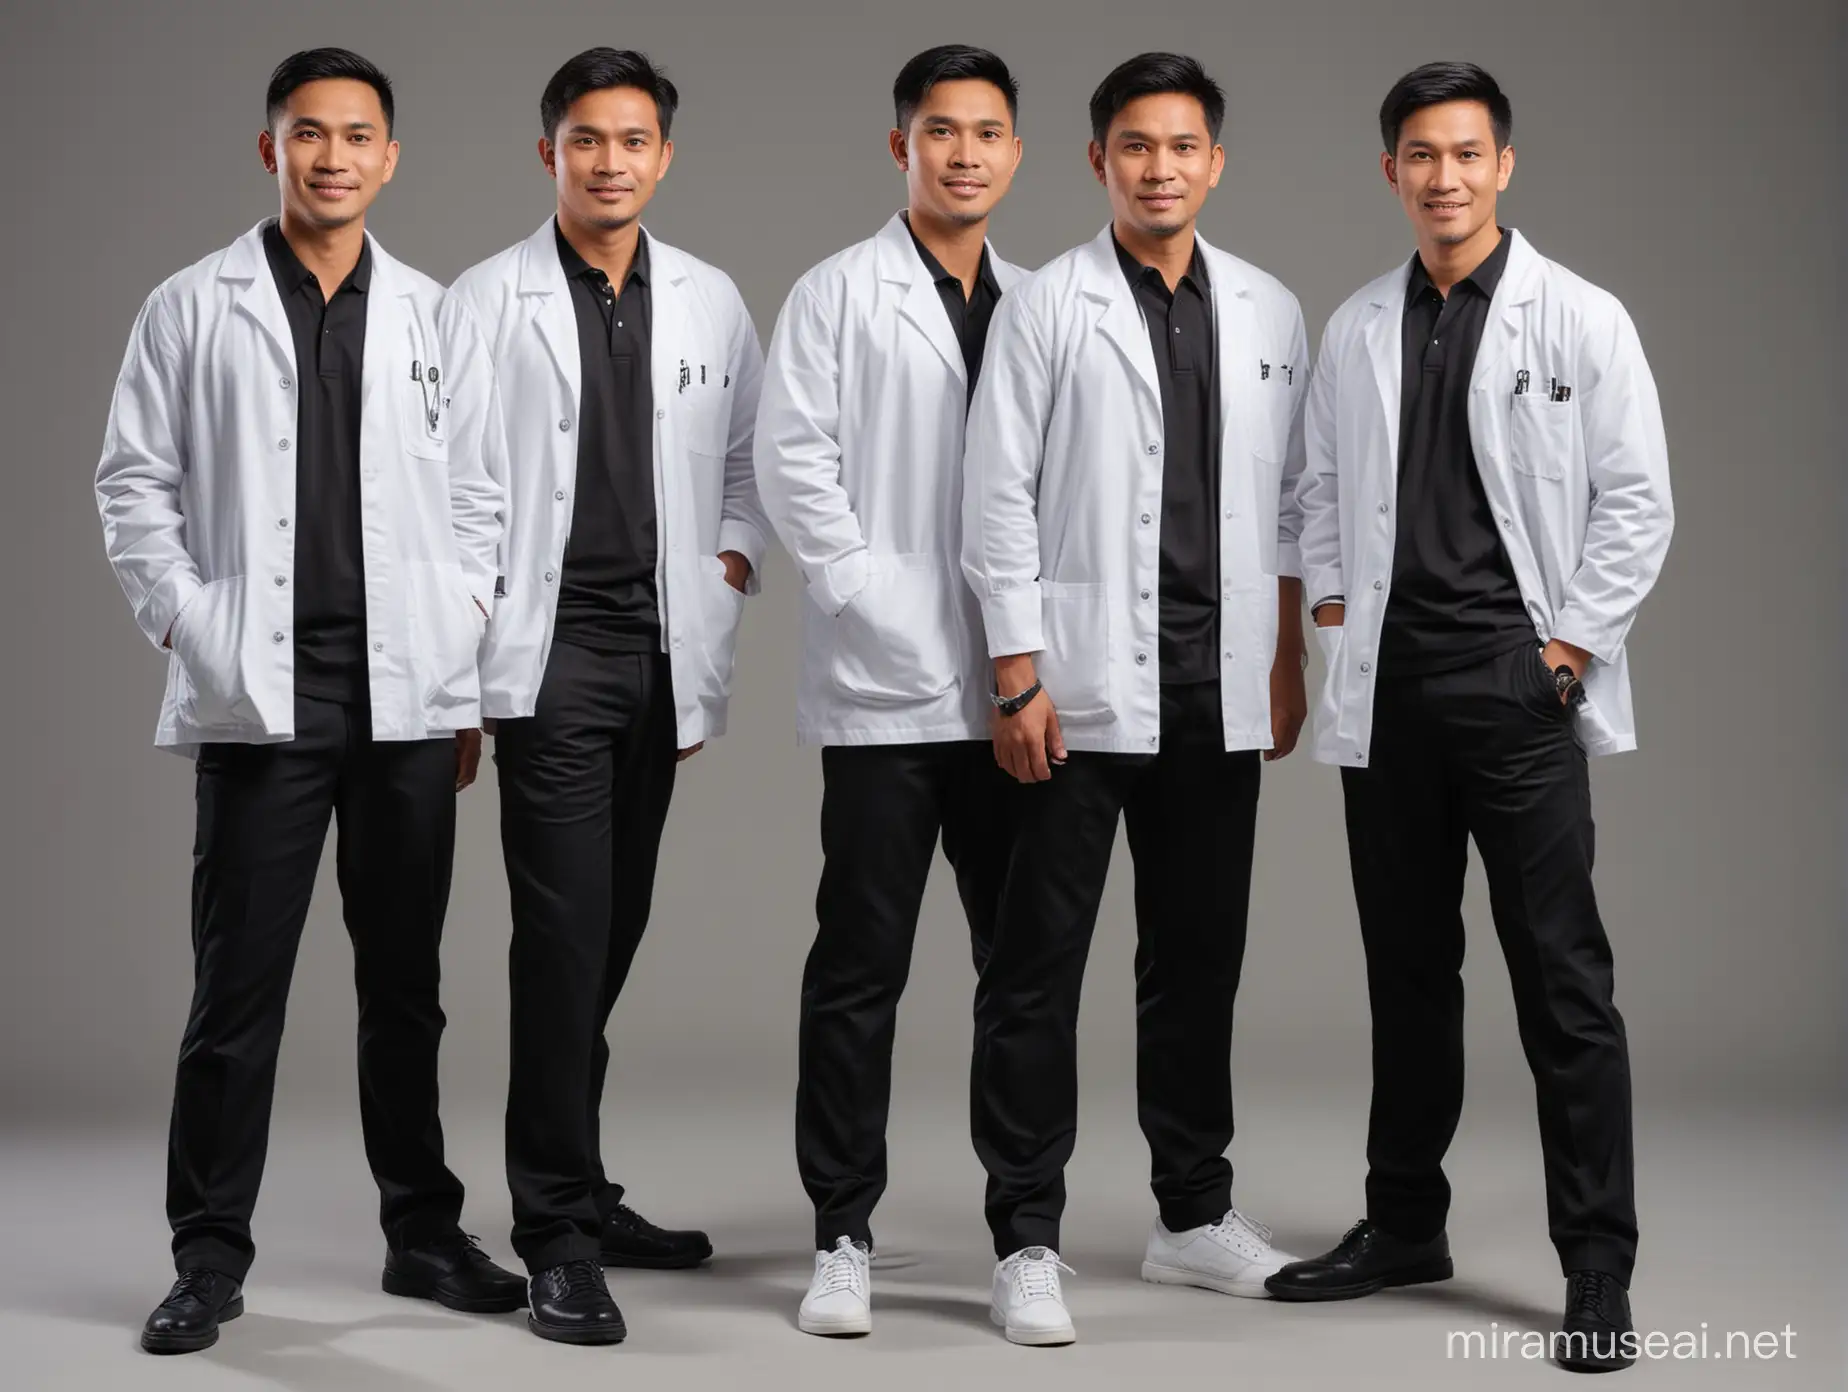 foto full body, grup 3 orang dokter pria indonesia, menggunakan luaran jas lengan pendek warna putih, dalaman kemeja hitam, celana panjang hitam, realistik, foto di studio background polos